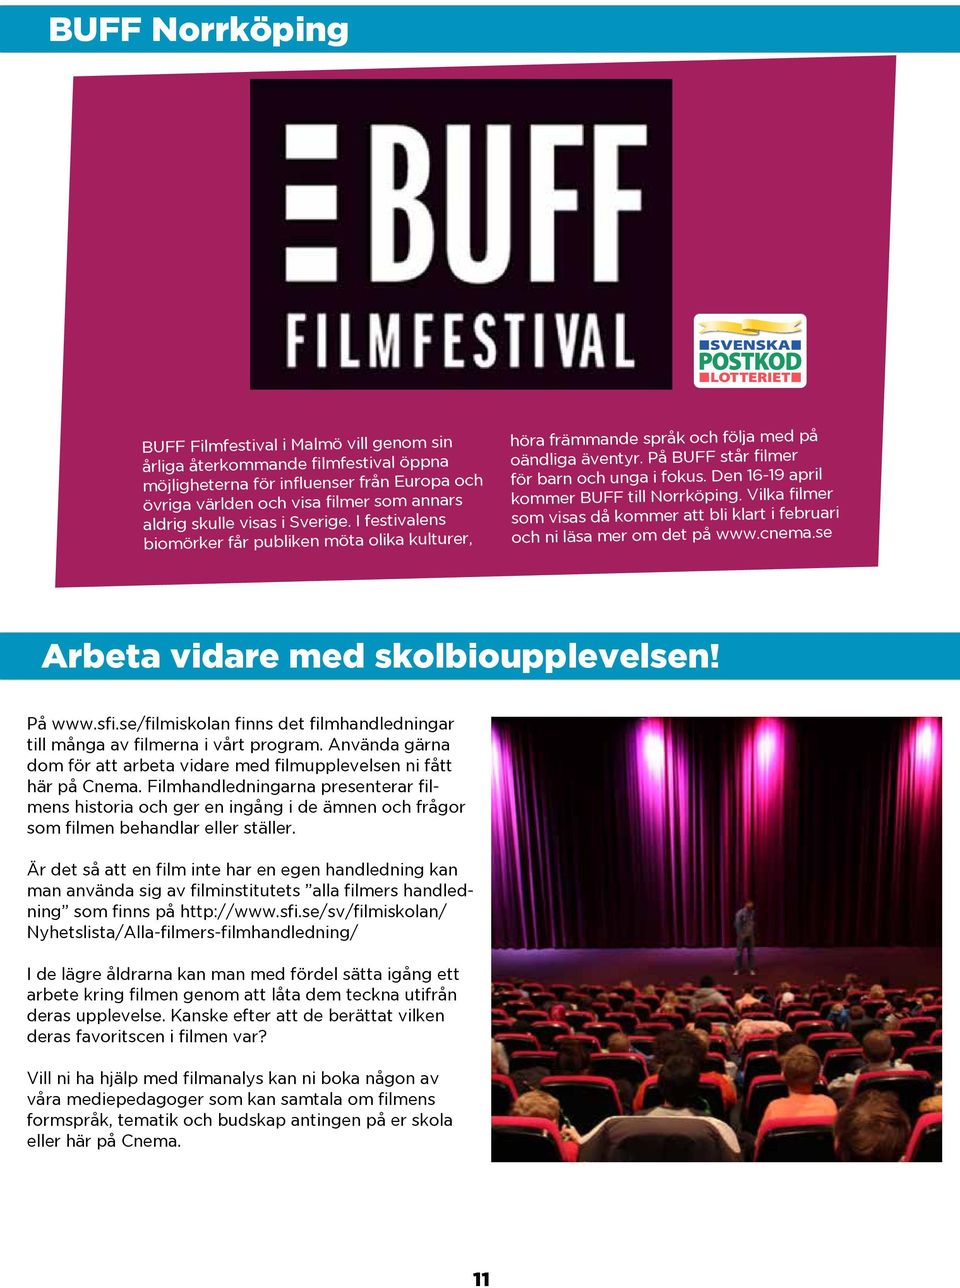 Den 16-19 april kommer BUFF till Norrköping. Vilka filmer som visas då kommer att bli klart i februari och ni läsa mer om det på www.cnema.se Arbeta vidare med skolbioupplevelsen! På www.sfi.